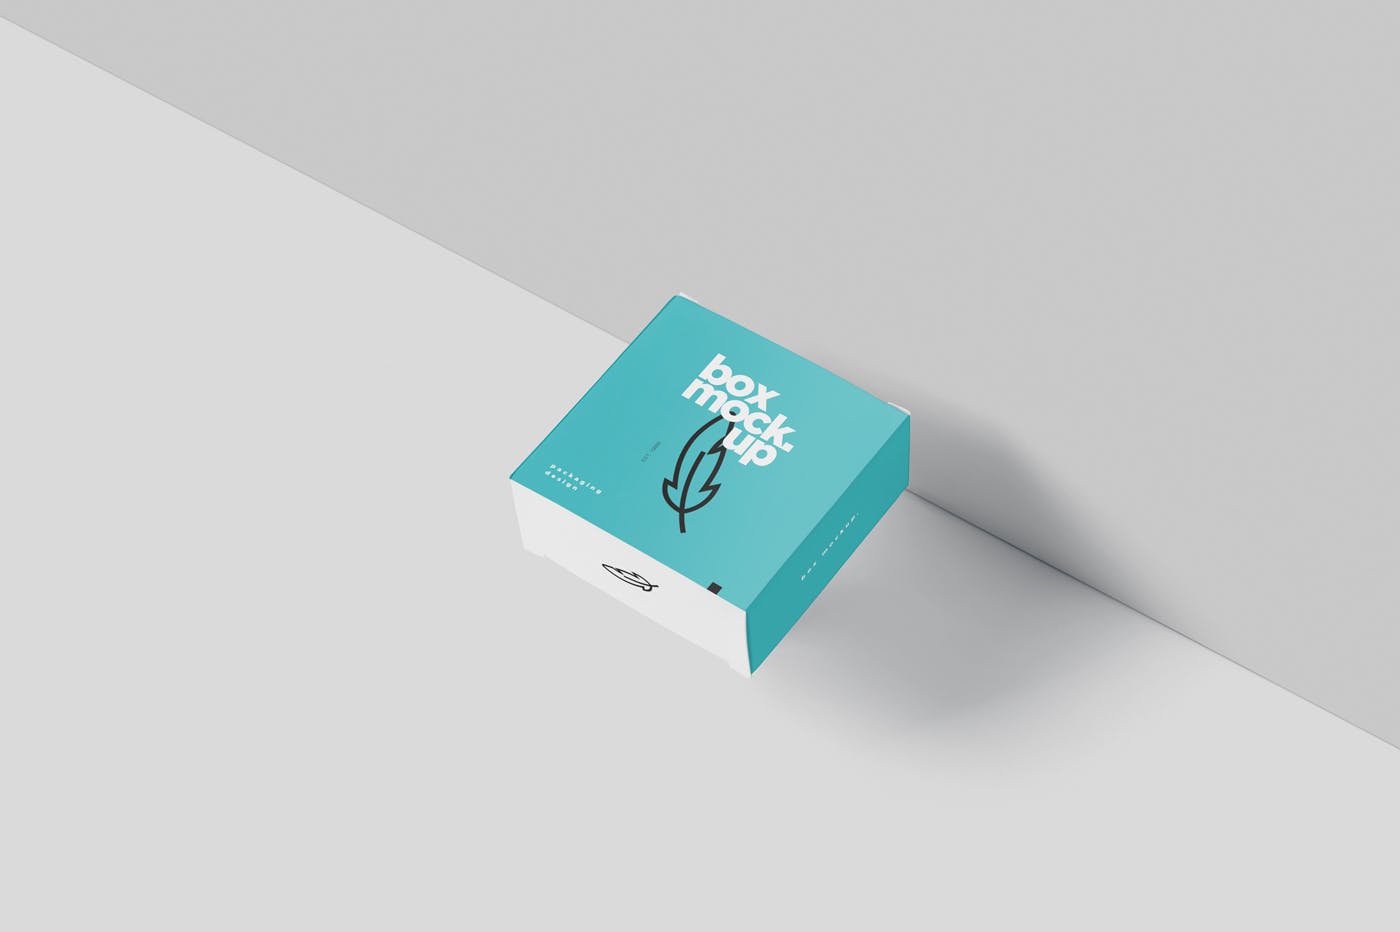 扁平方形包装盒外观设计效果图大洋岛精选 Box Mockup – Square Slim Size插图2